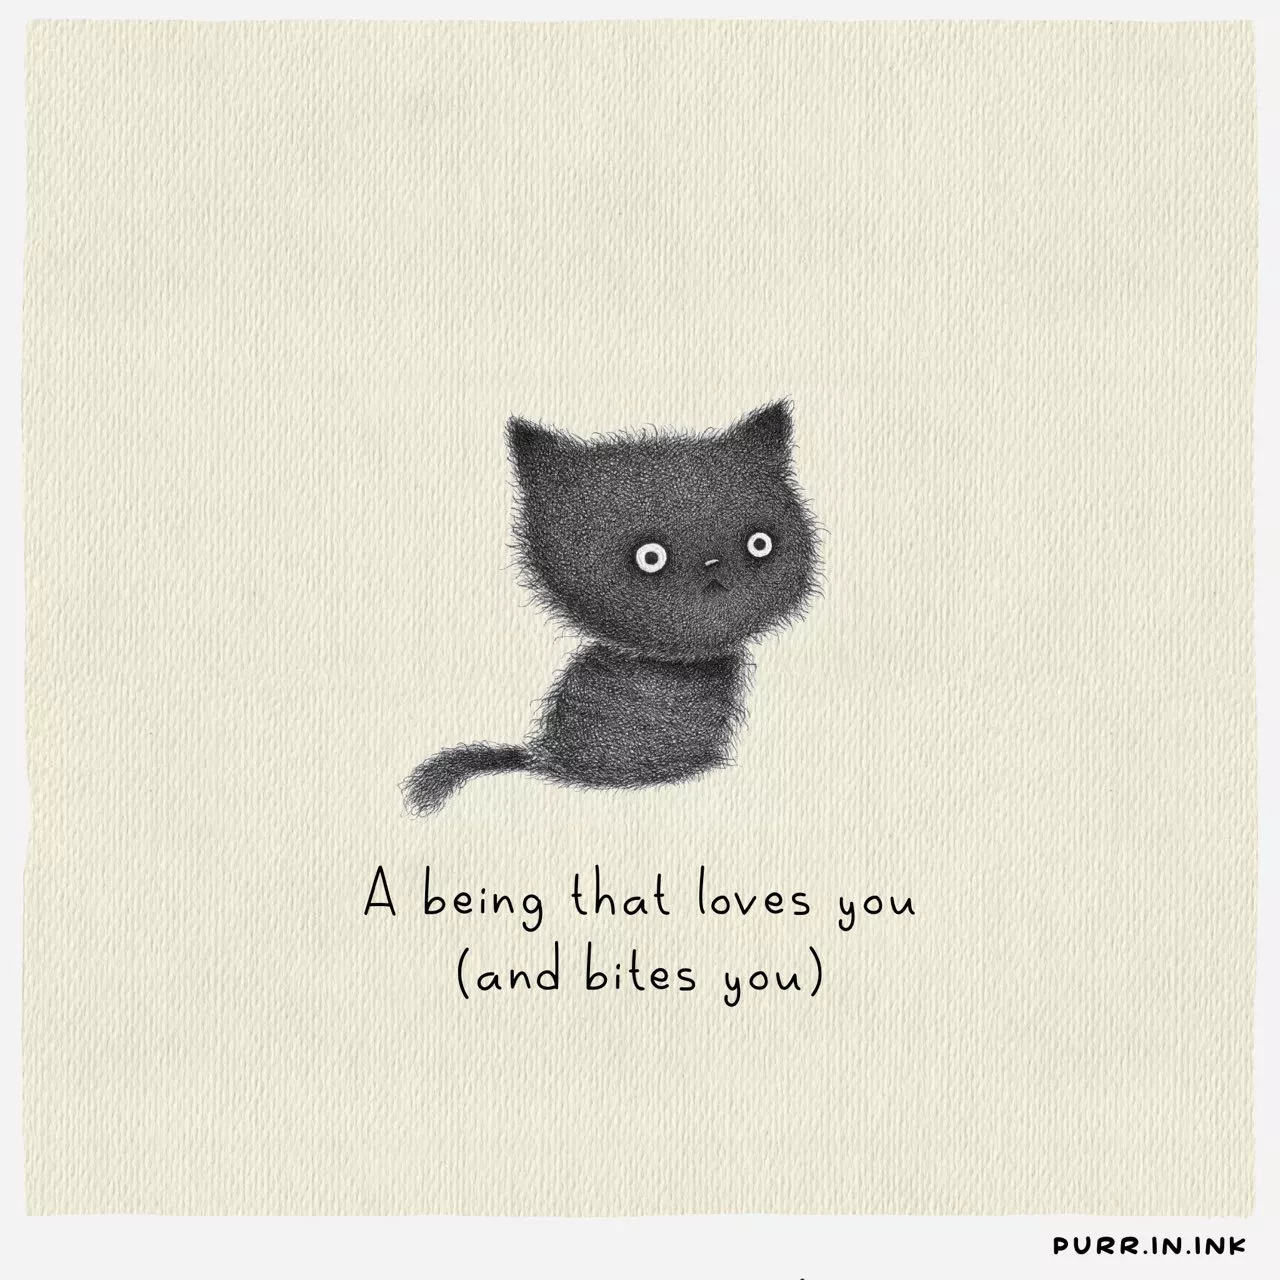 รักคุณ (และจะกัดคุณ) แมว